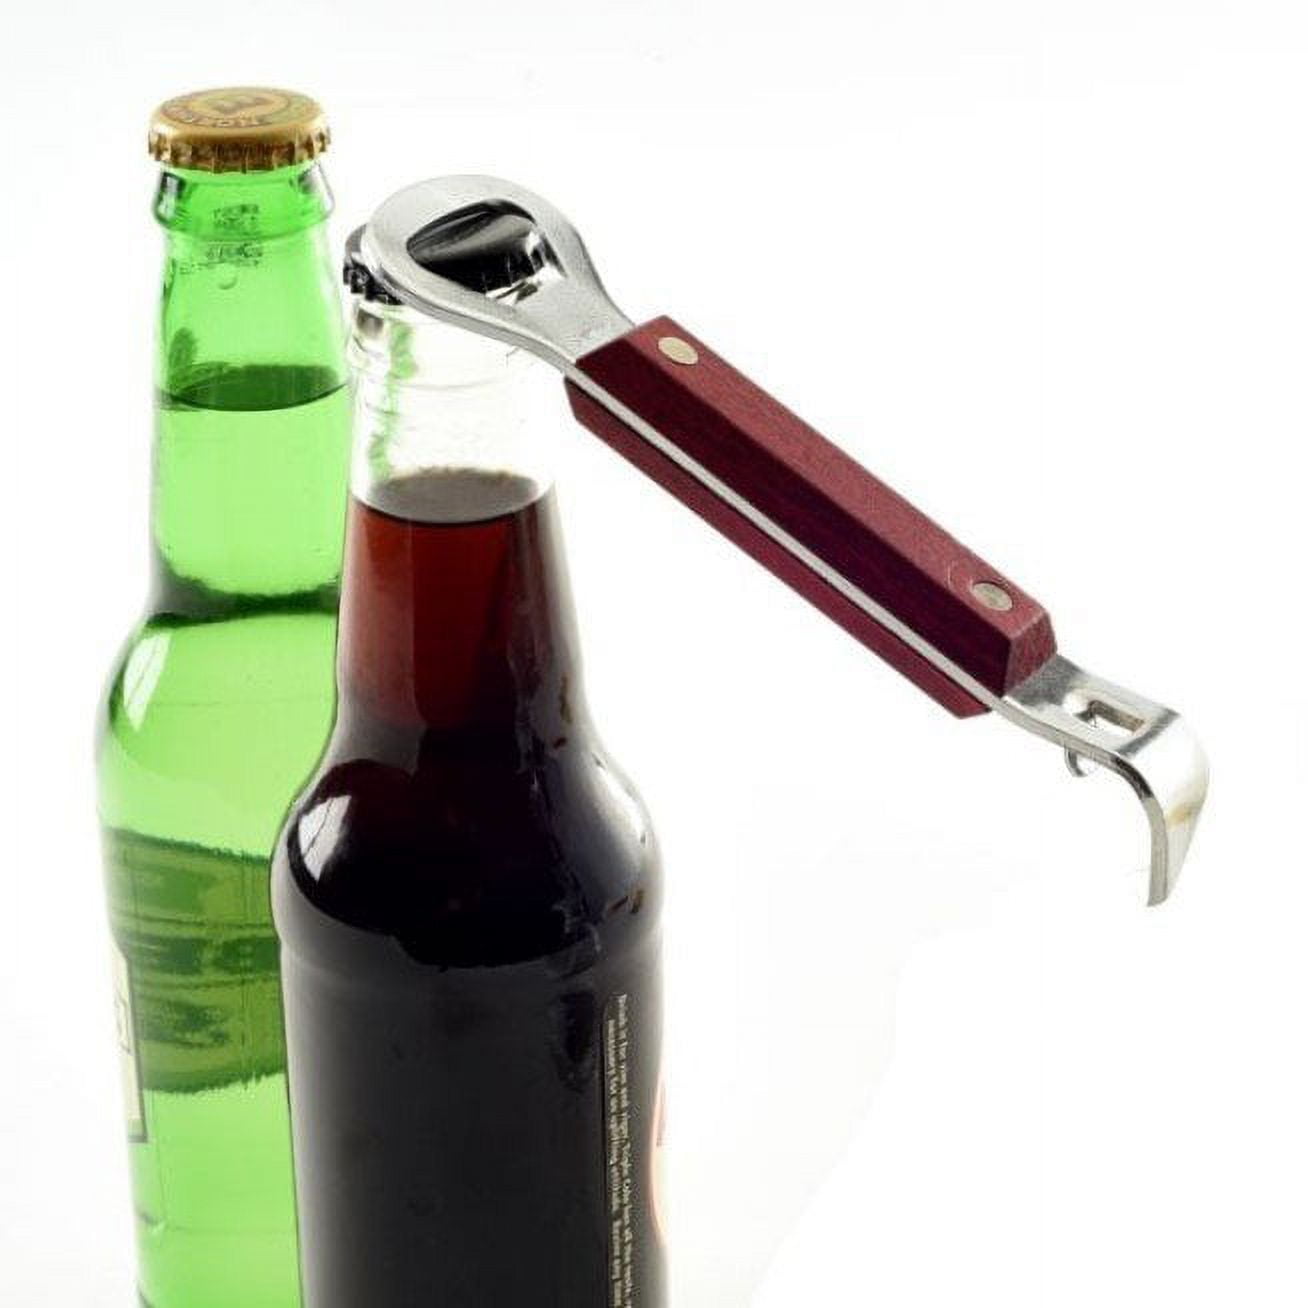 Norpro Jar Lid Gripper Opener and 5-in-1 Pop Can / Beer Bottle